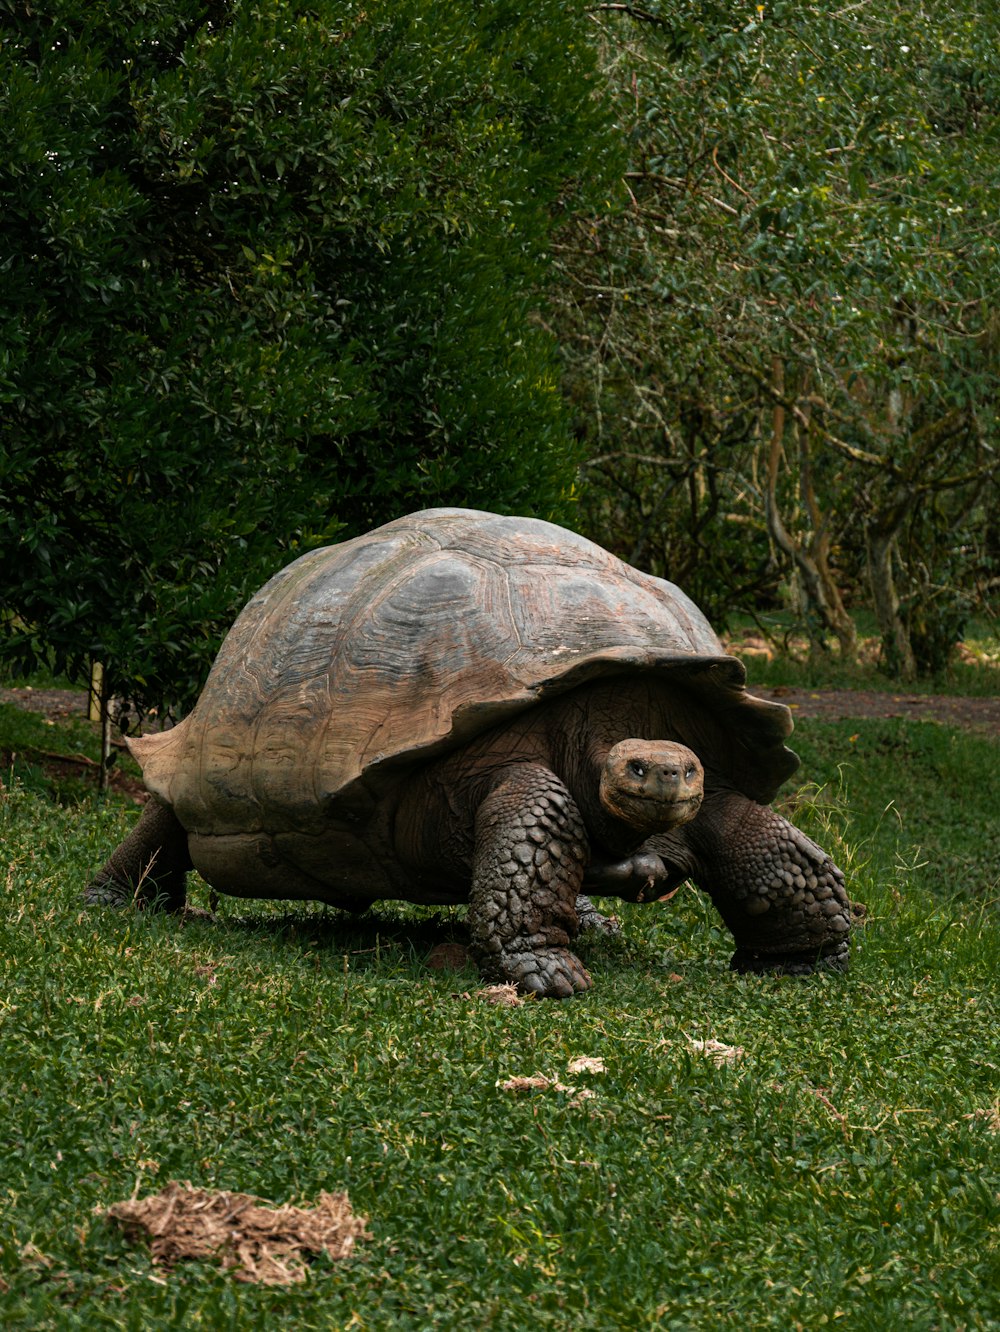 a large tortoise walking across a lush green field